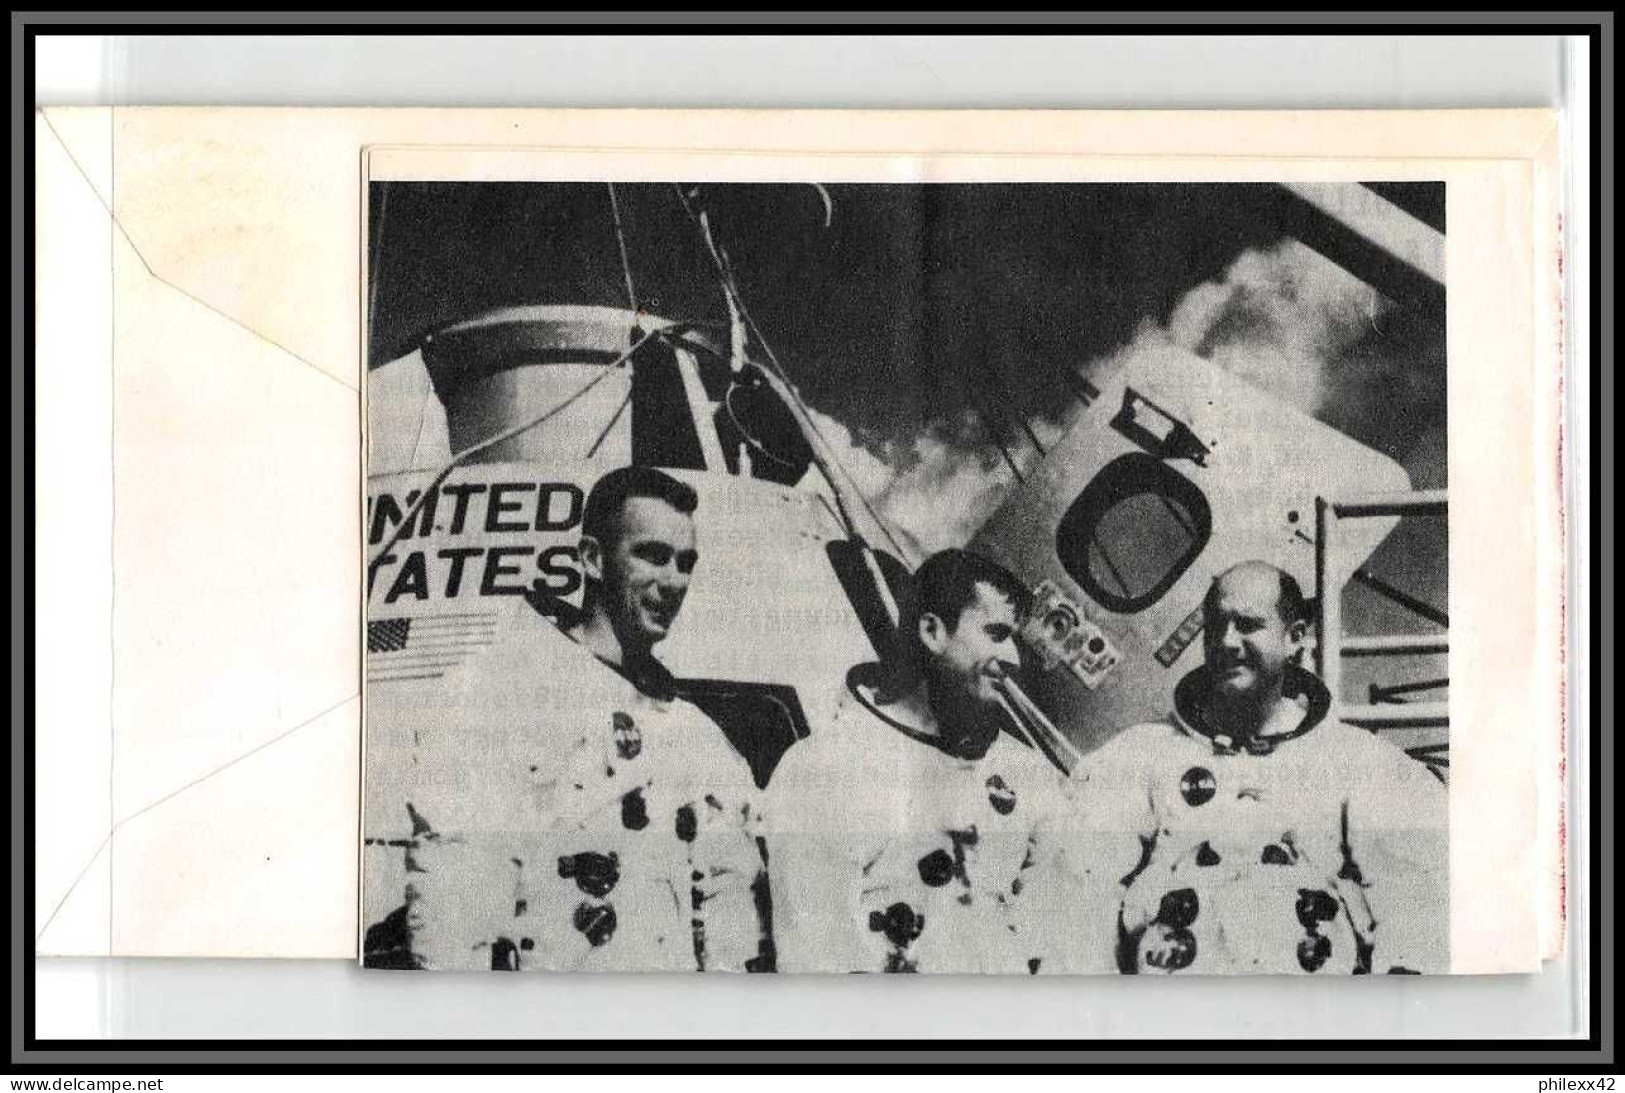 2376 Espace (space Raumfahrt) Entier Postal (Stamped Stationery) Usa- Apollo 9 Splashdown - SATURN 5 13/3/1969 - Verenigde Staten